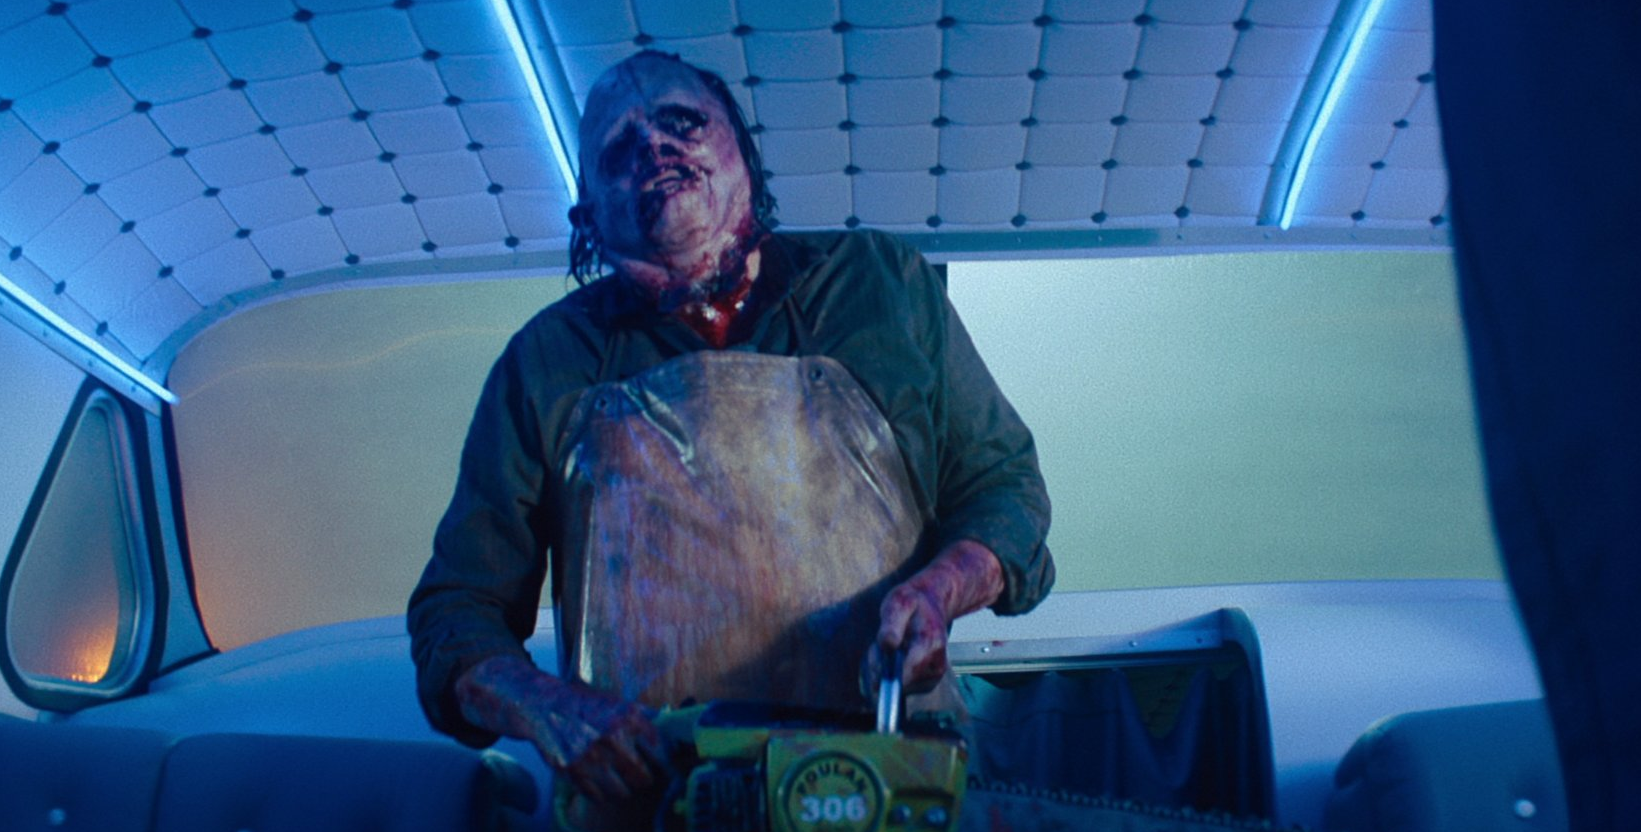 Netflix's Texas Chainsaw Massacre Sequel Earns Mixed Reviews